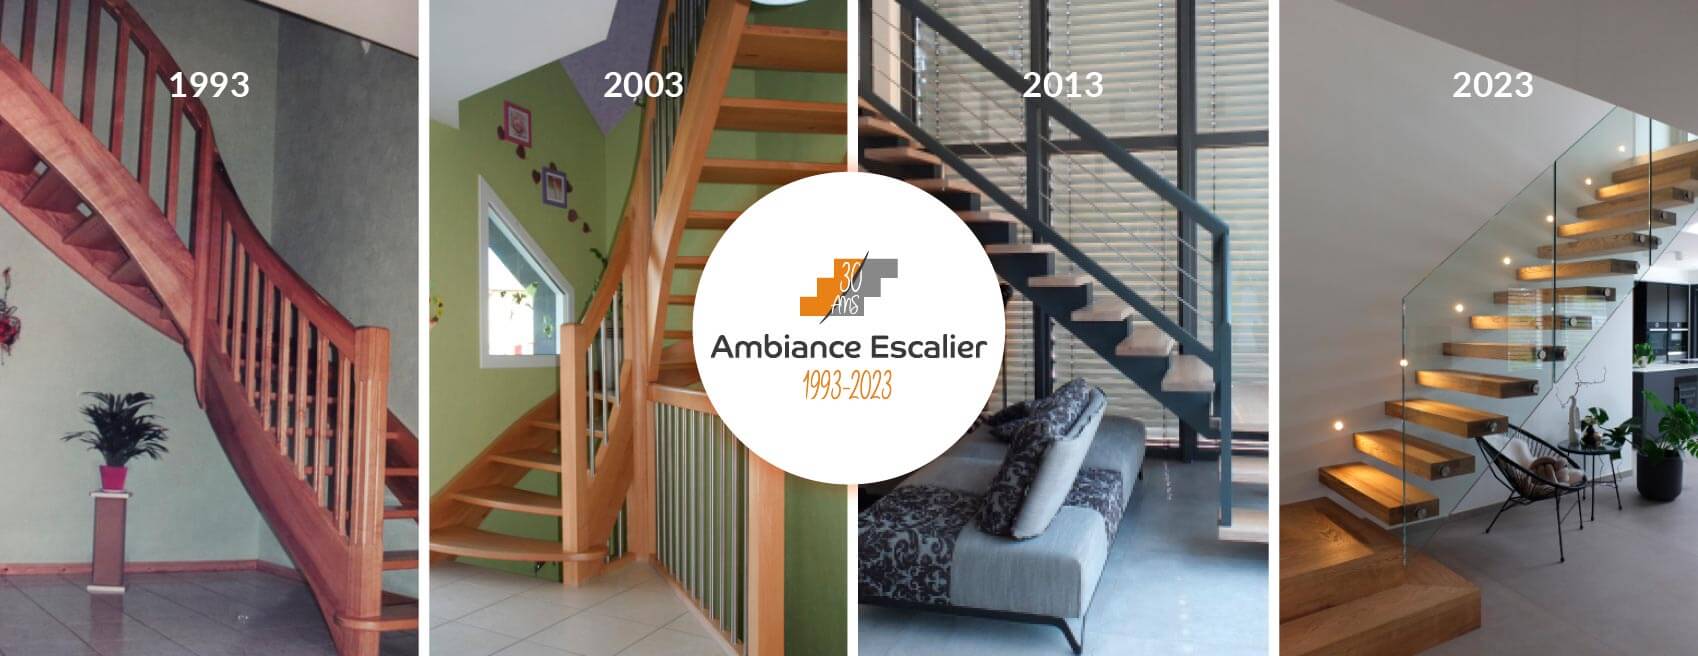 Ambiance Escalier fête ses 30 ans d'existence en 2023